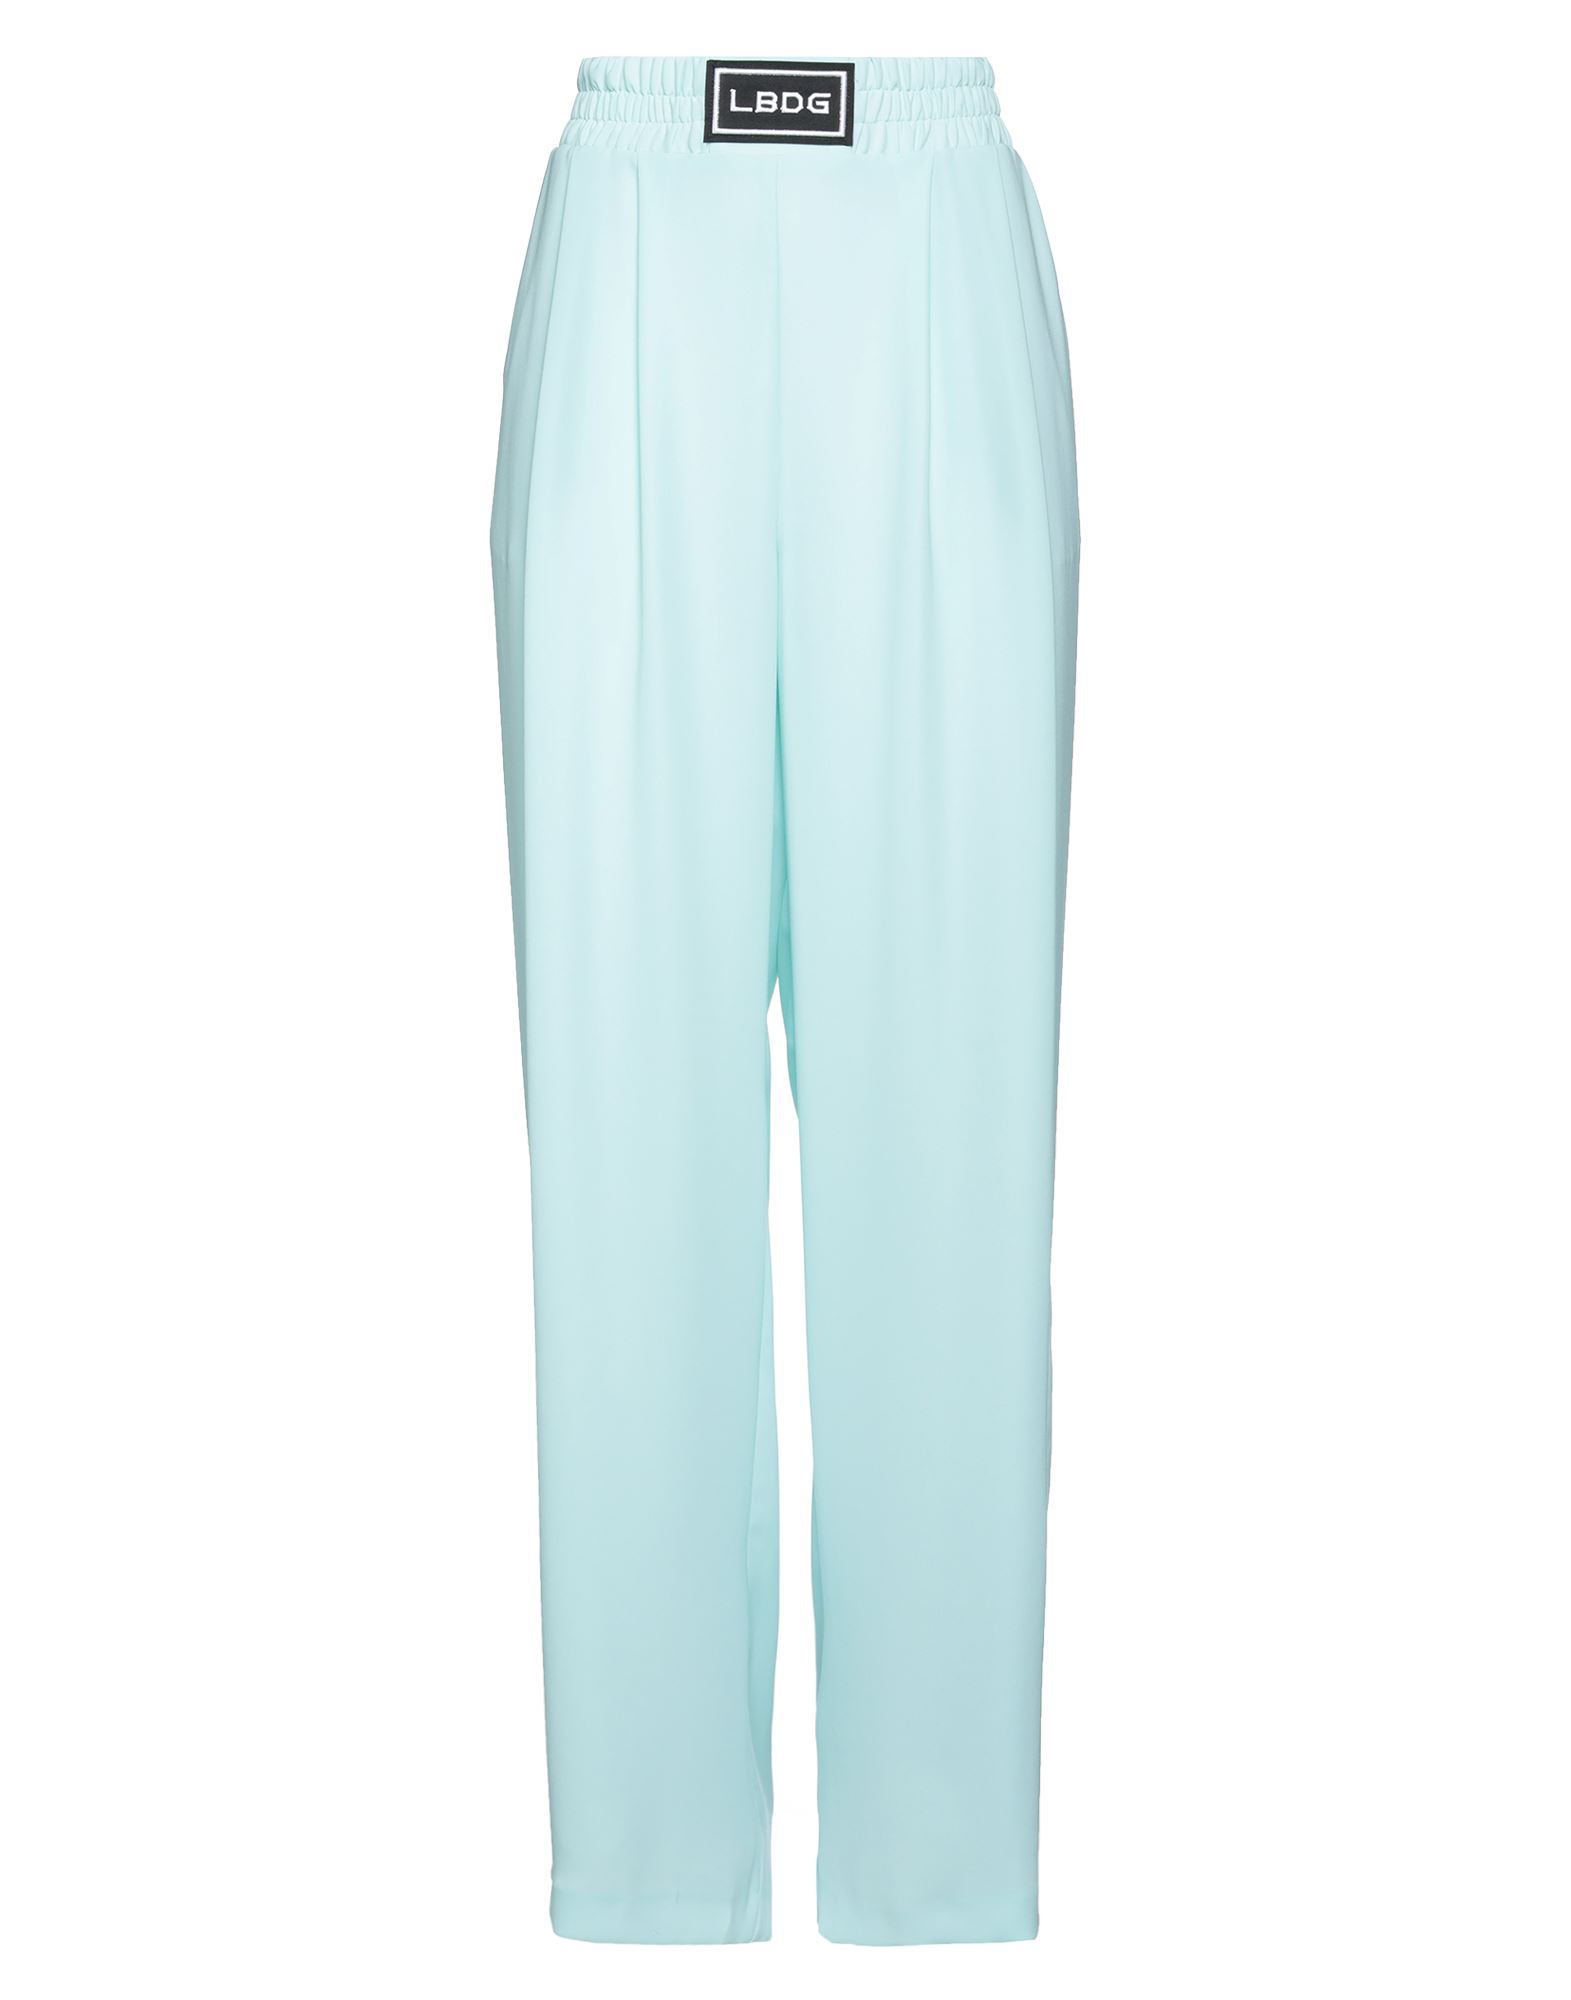 Les Bourdelles Des Garçons Woman Pants Sky Blue Size 6 Polyester